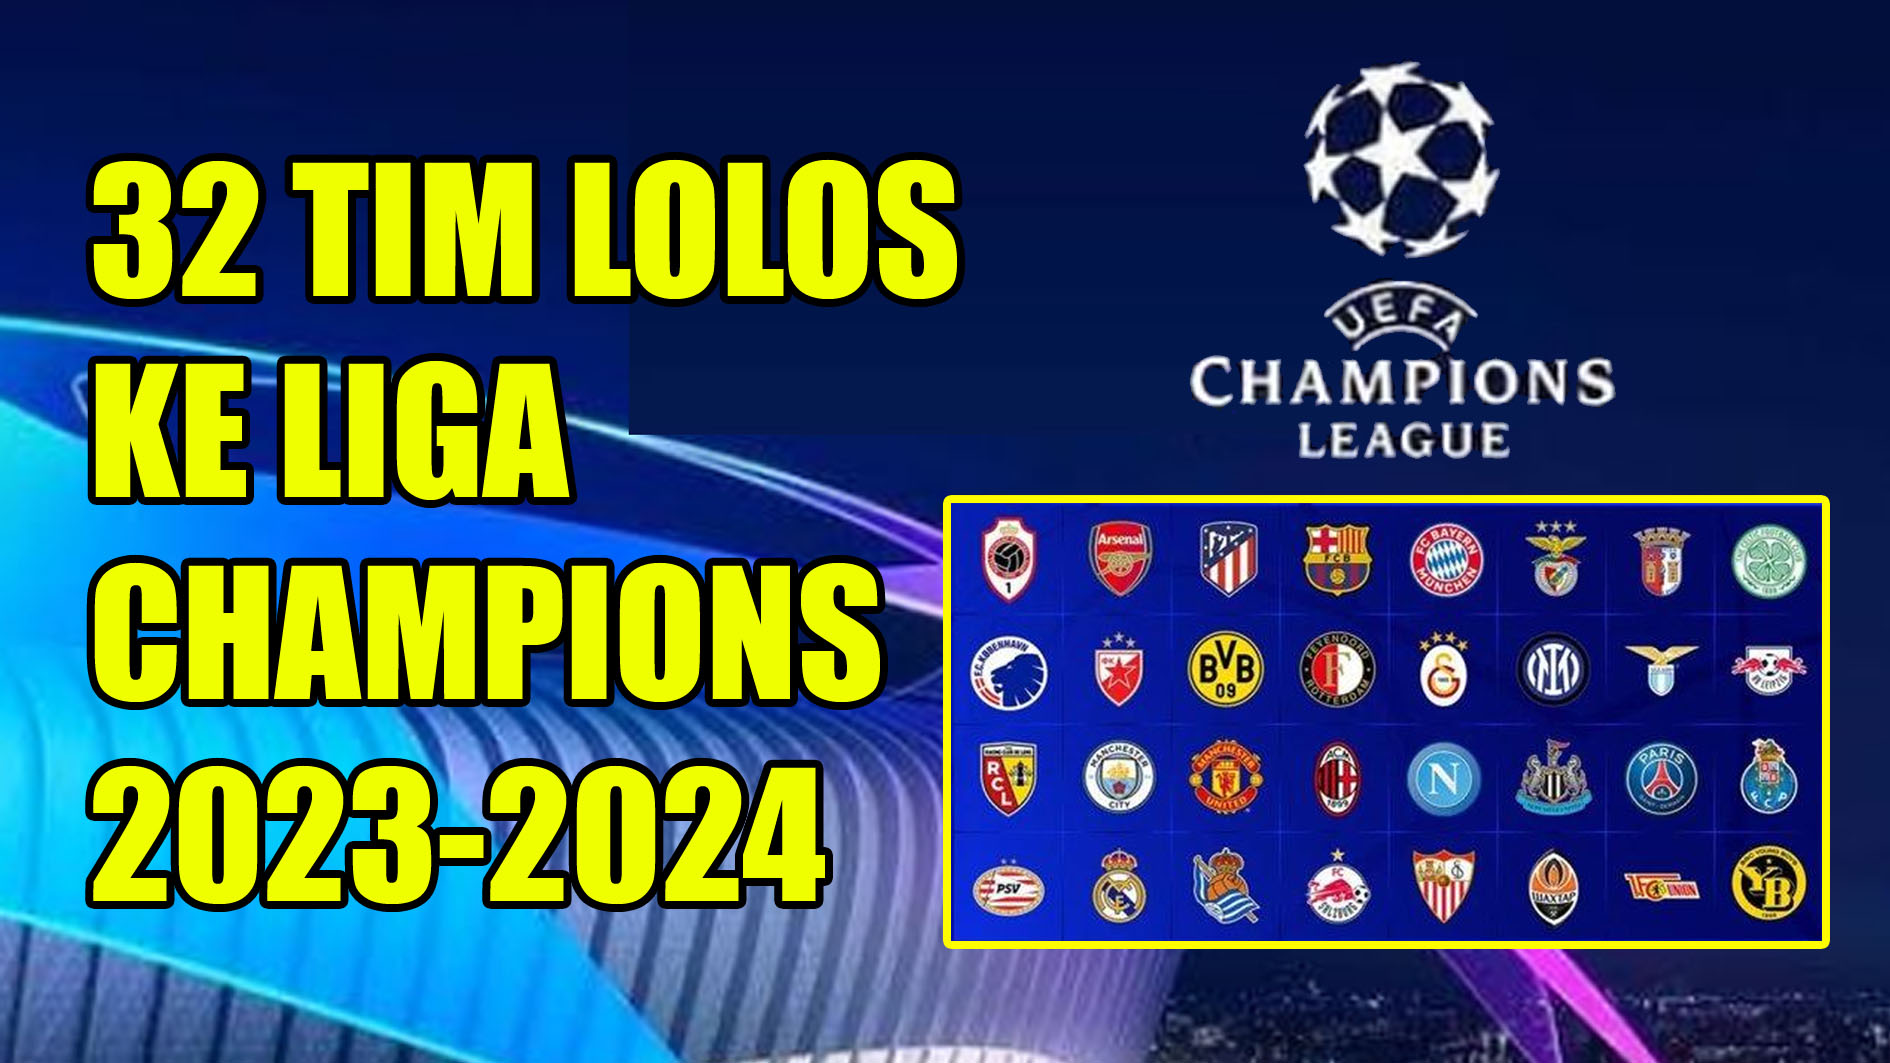 Banyak Wajah Baru, ini 32 Tim Lolos ke Liga Champions 2023-2024